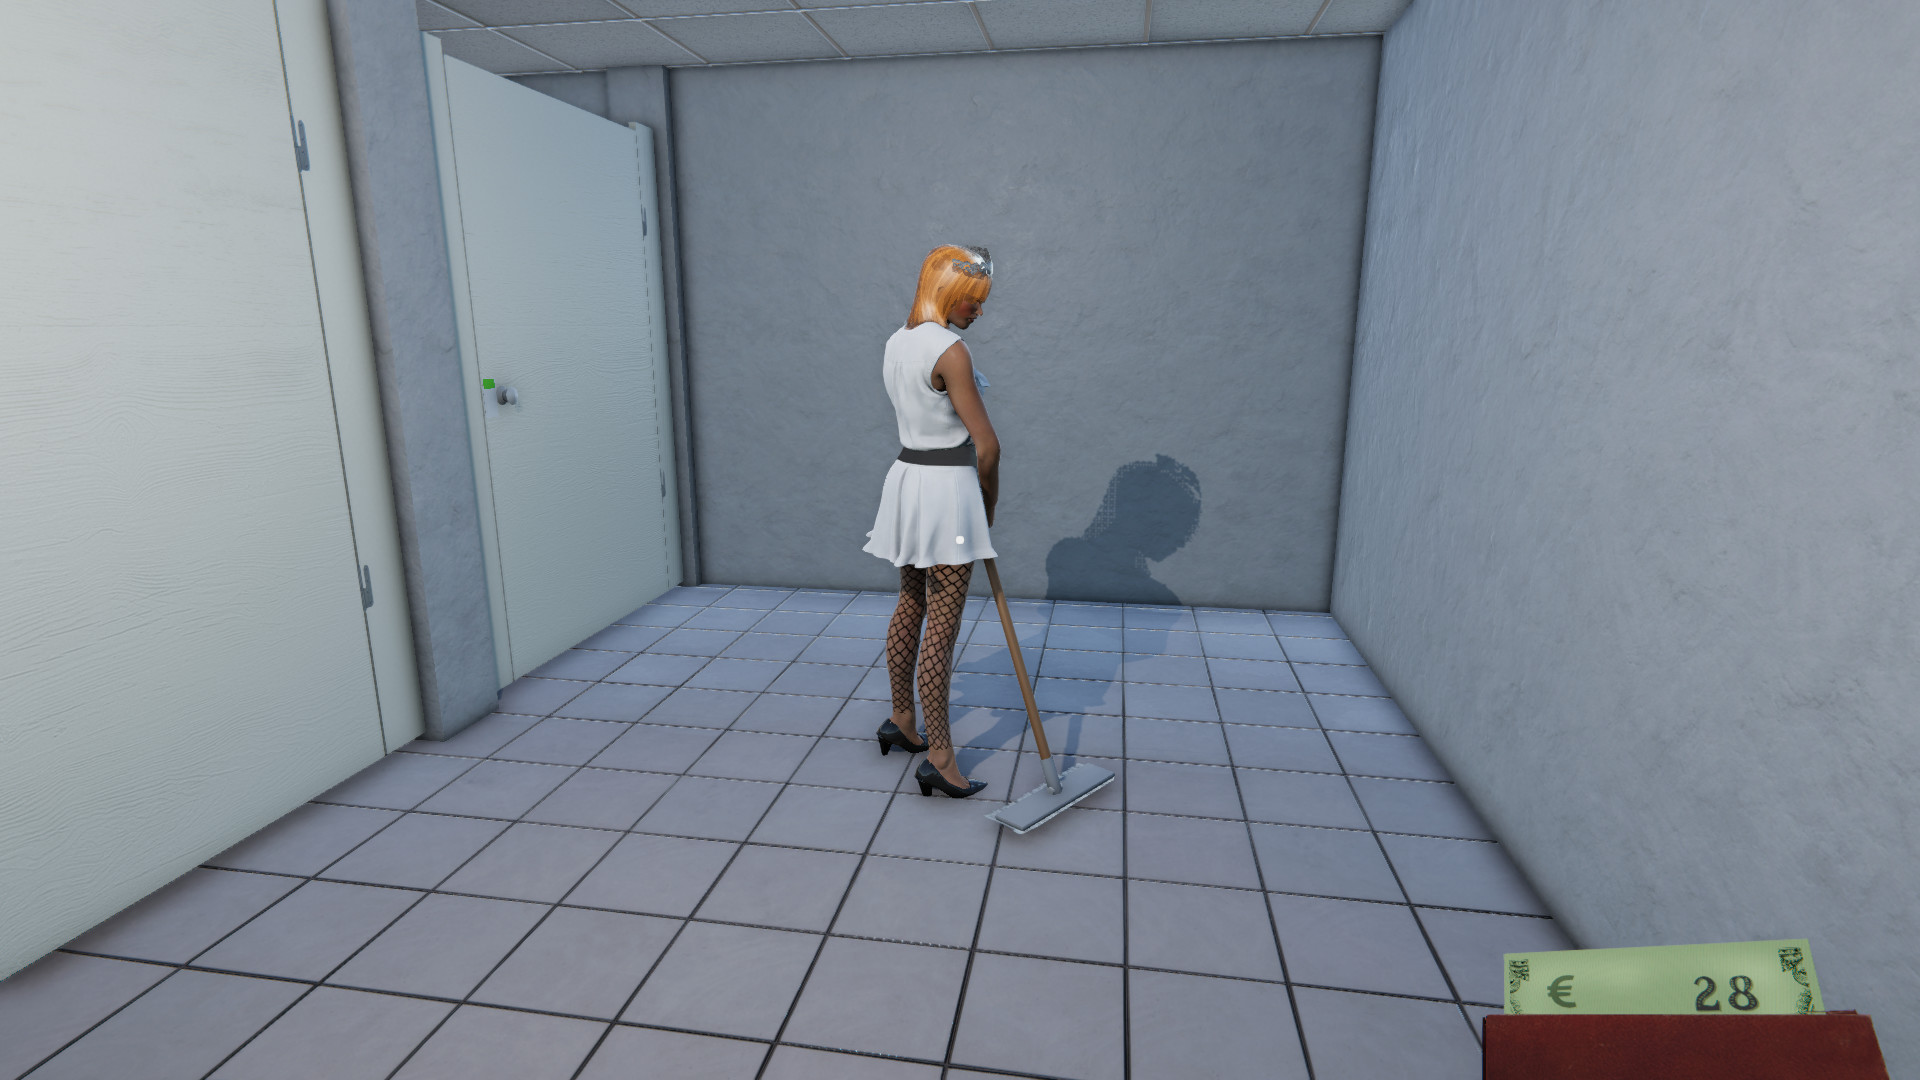 Toilet Management Simulator screenshot